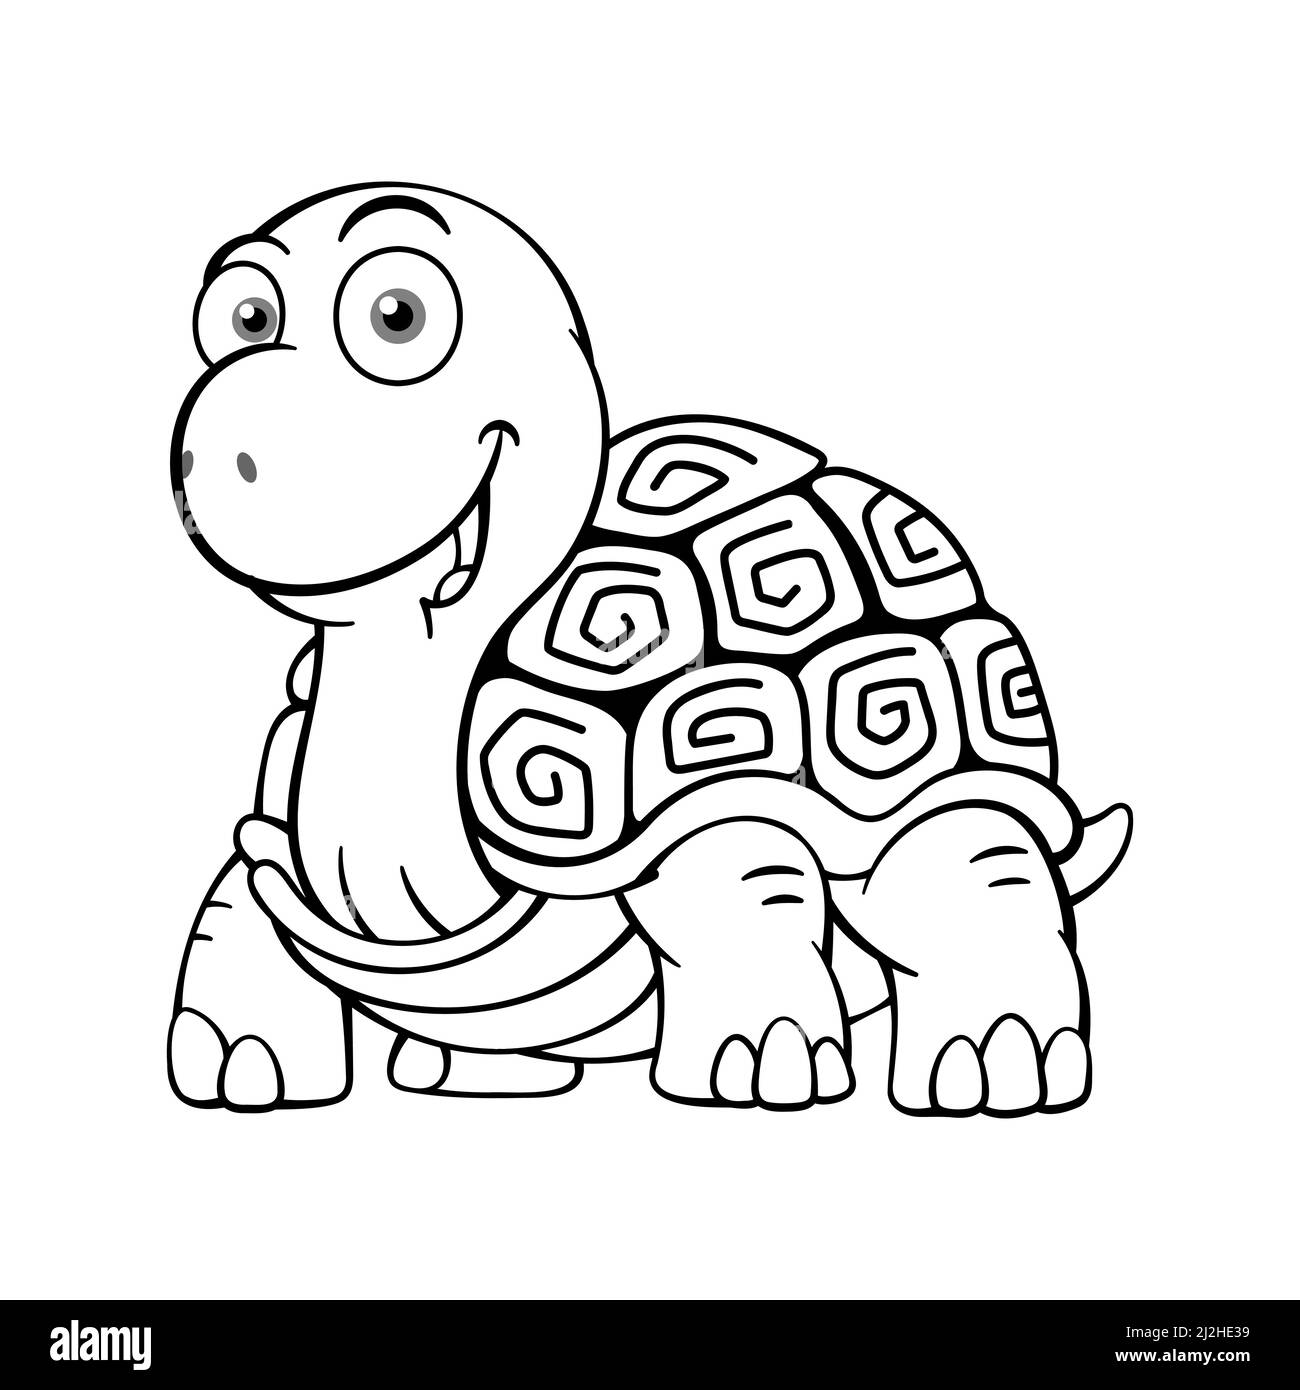 Joli dessin du personnage de dessin animé tortue Illustration de Vecteur